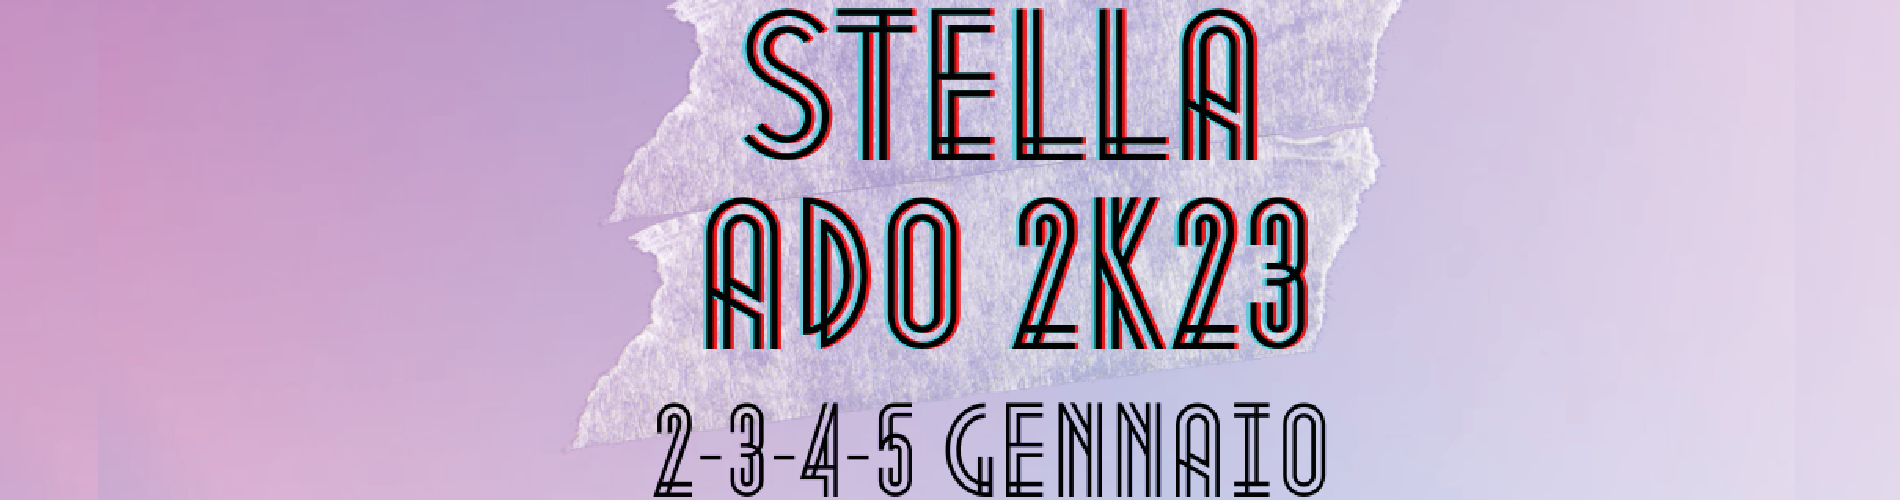 Stella ADO 2K23